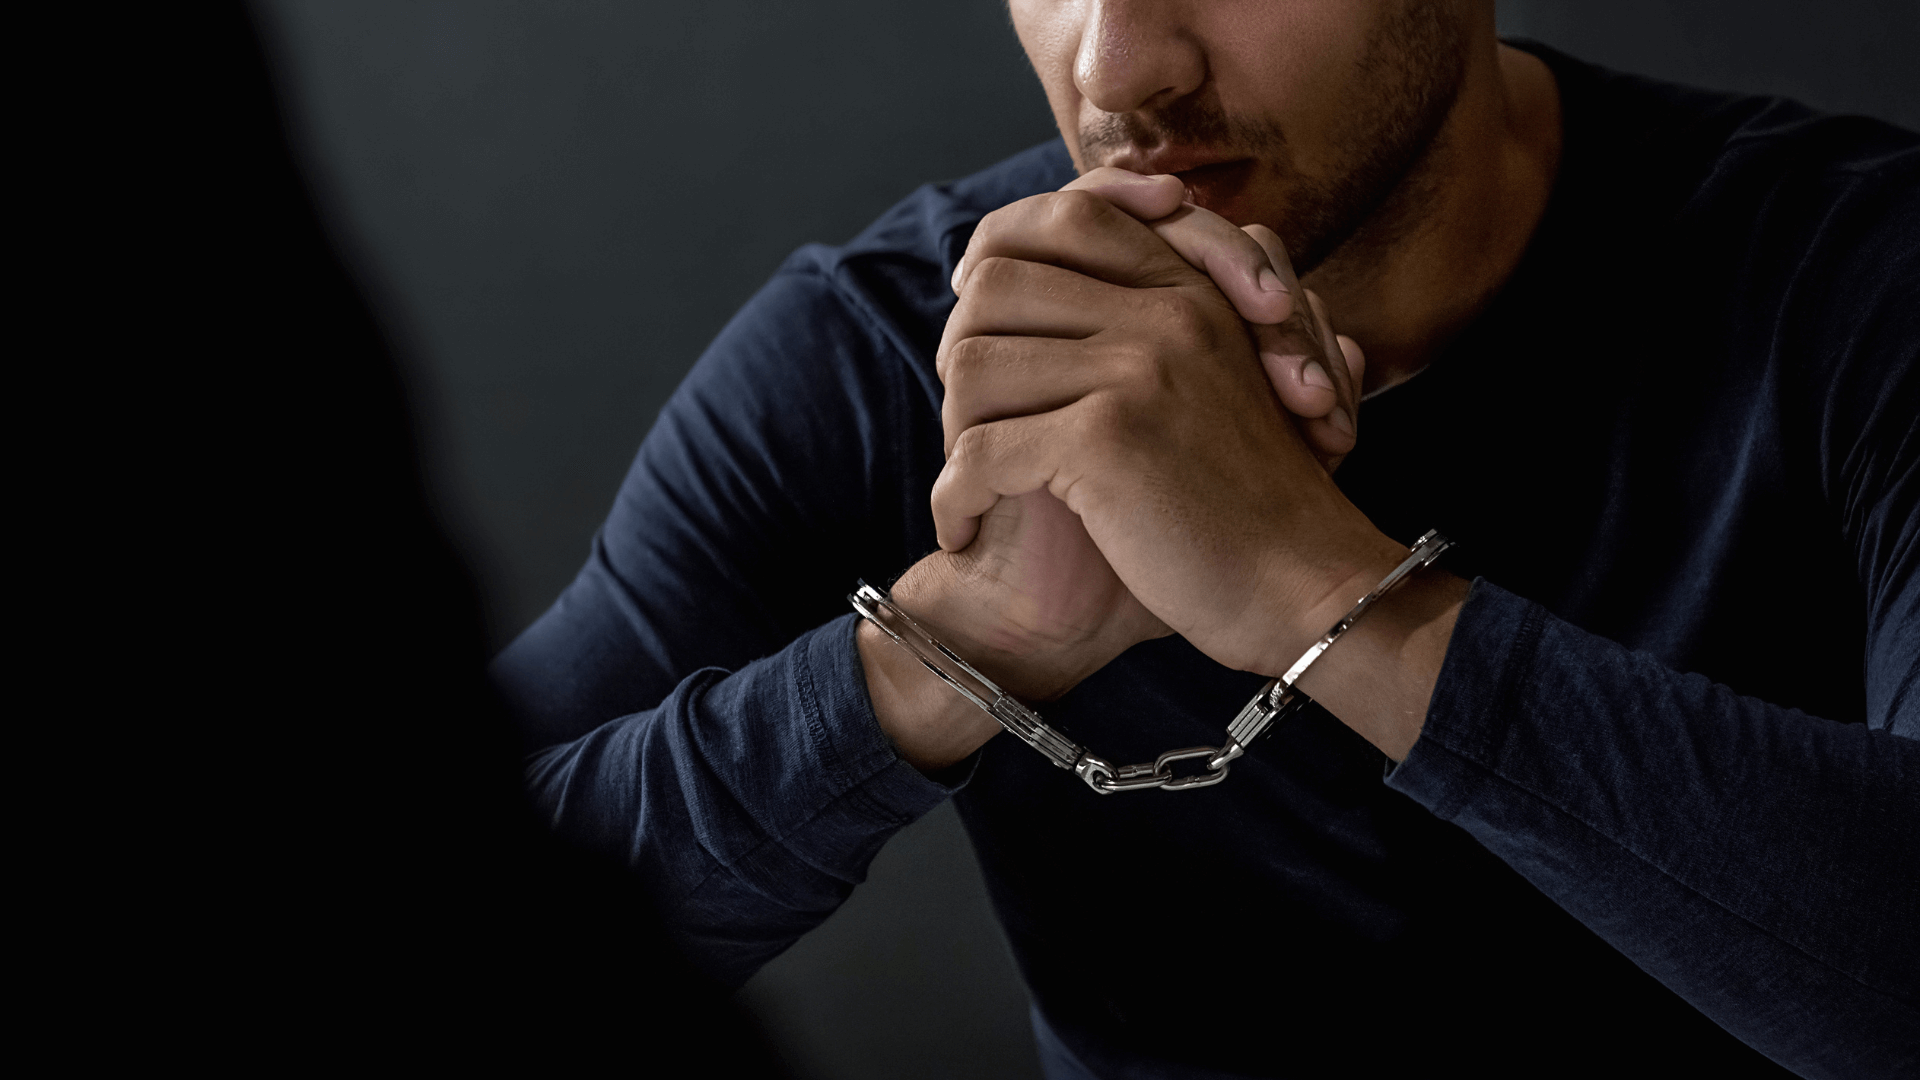 A man in handcuffs being interrogated 